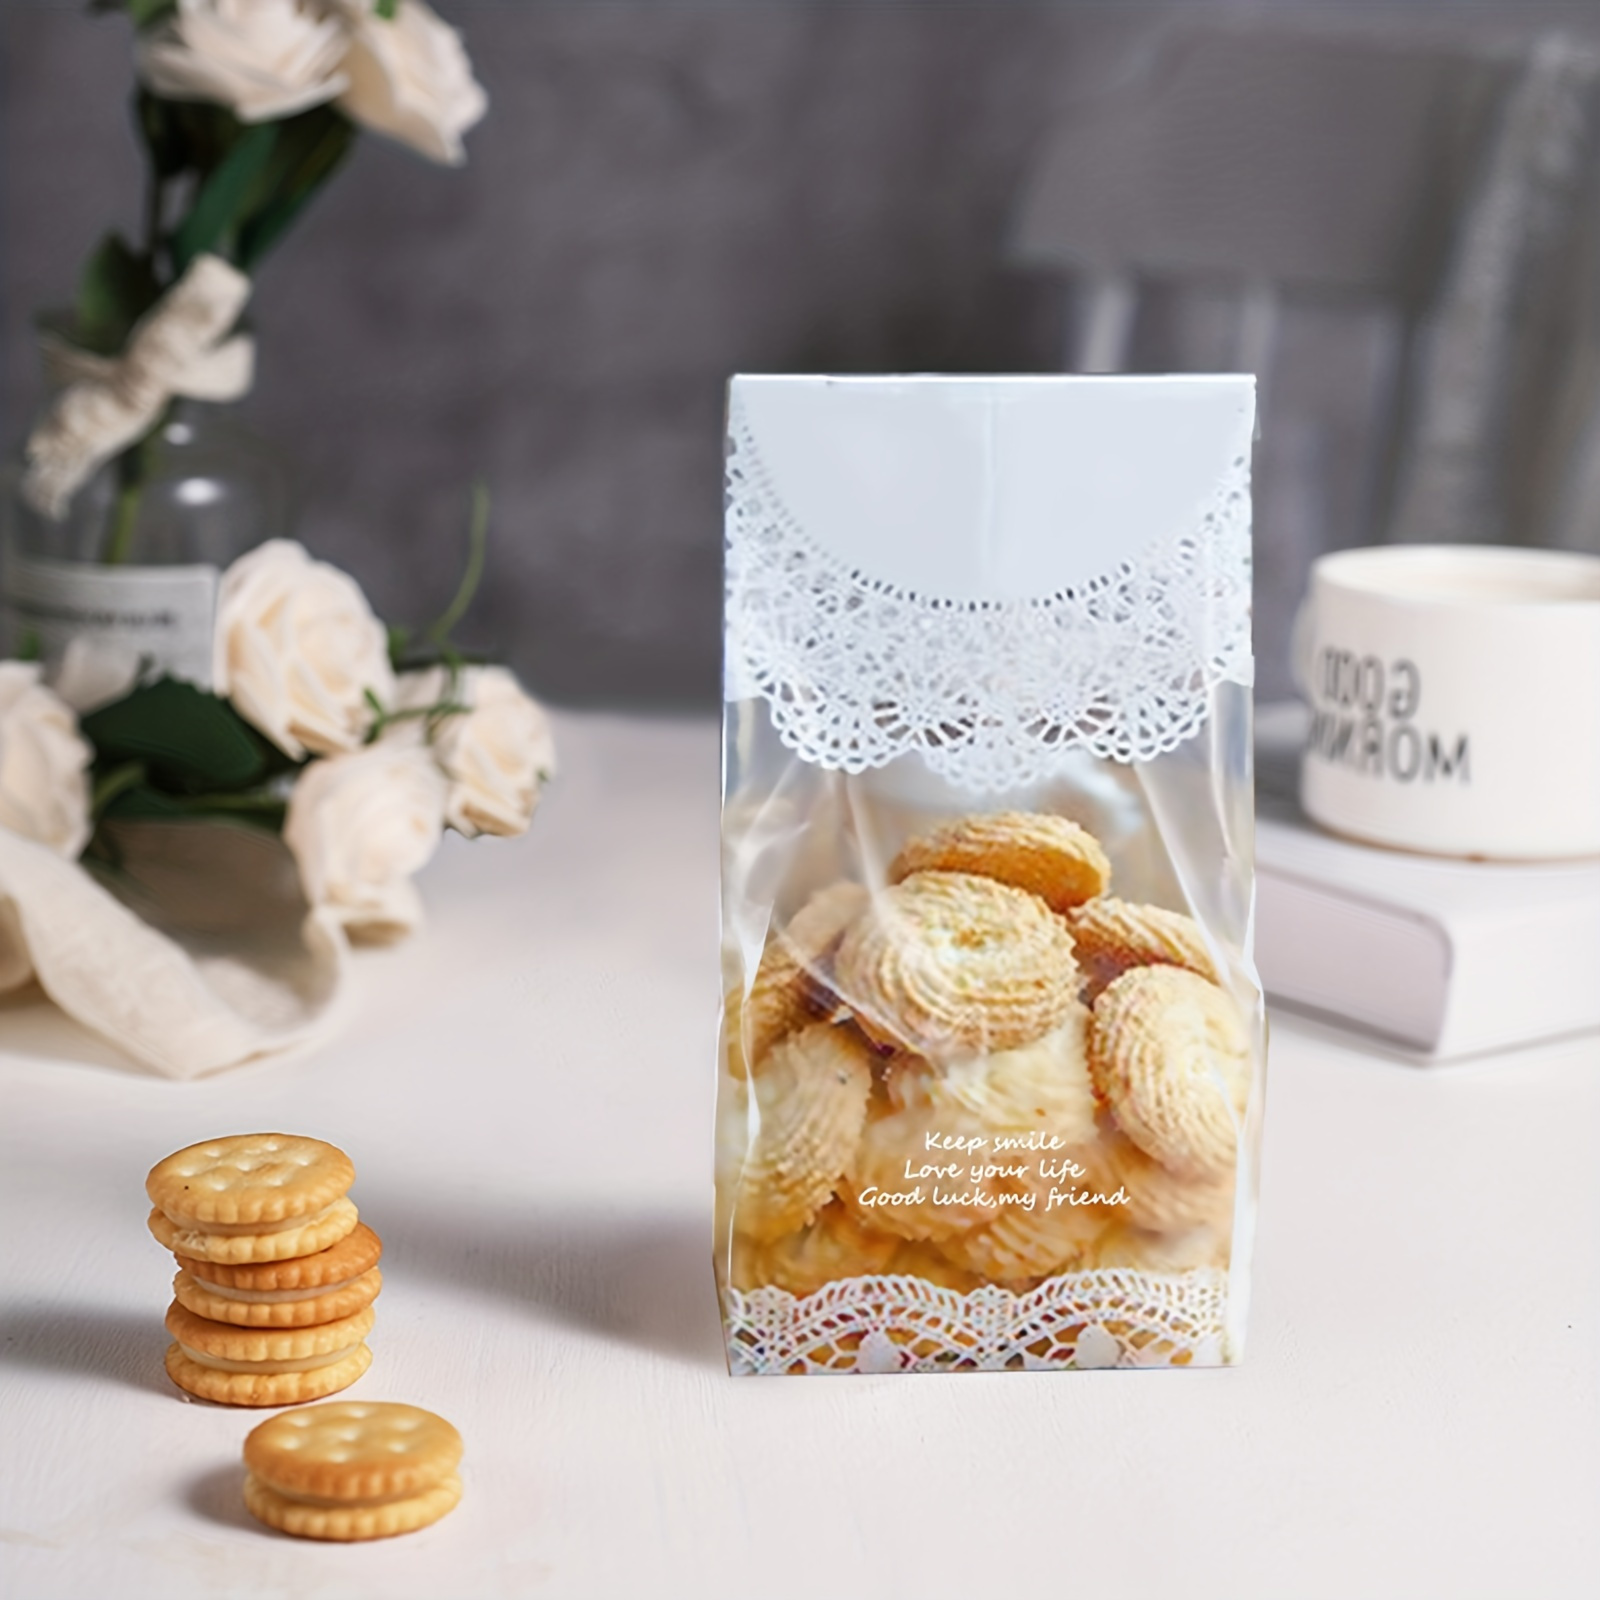 Sacchetti di cellophane Confezione Da 100 (6 X 10 pollici), Sacchetti per  biscotti con fiocchi colorati, Sacchetti regalo trasparenti per la  conservazione degli alimenti -aya